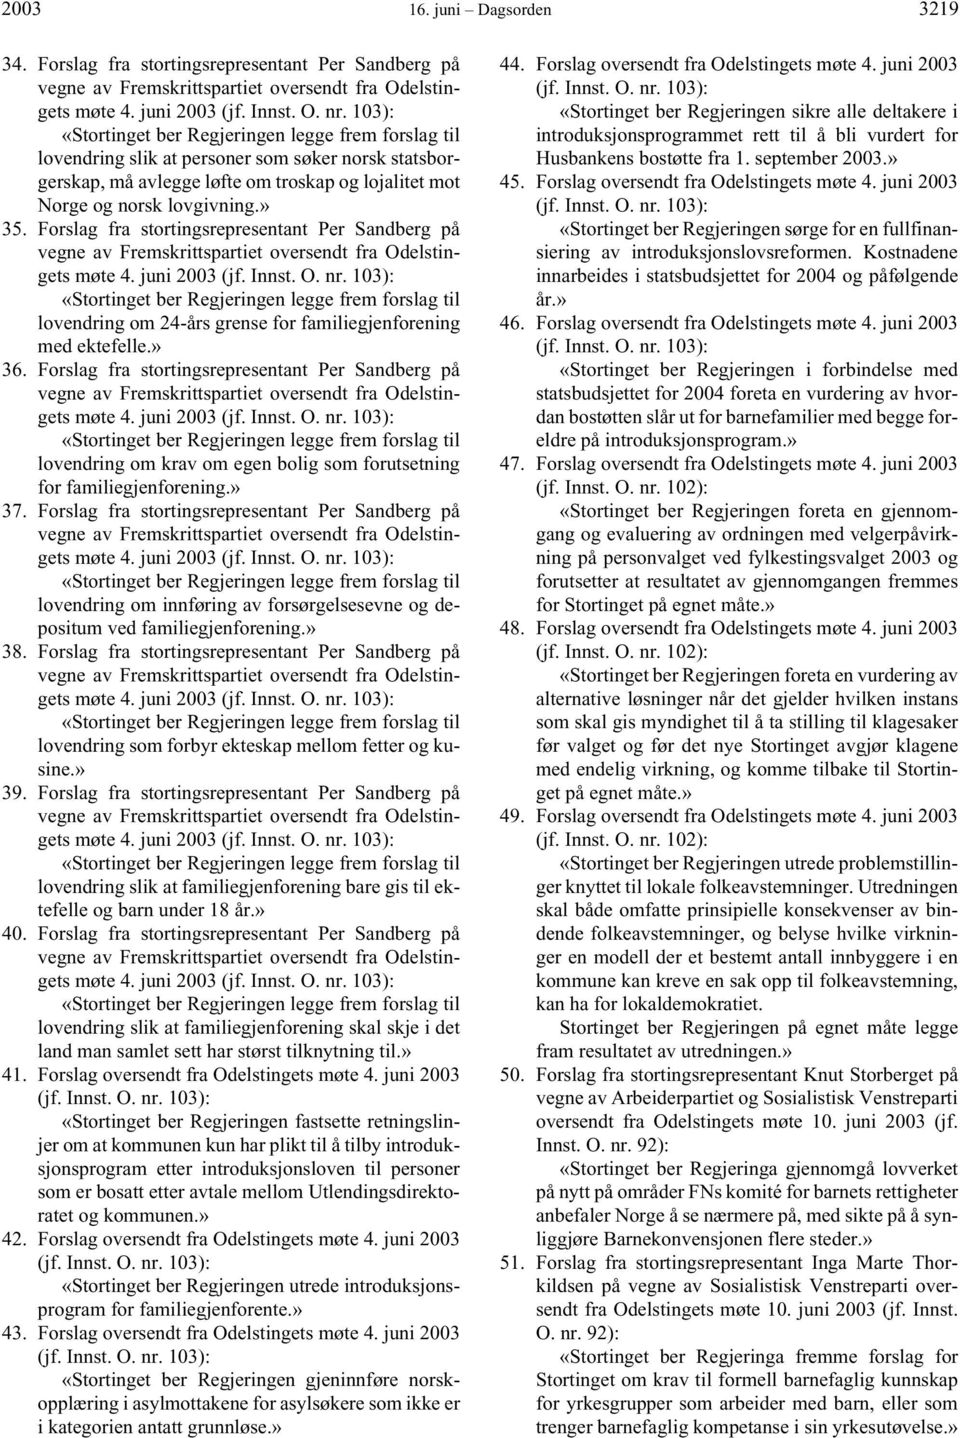 Forslag fra stortingsrepresentant Per Sandberg på vegne av Fremskrittspartiet oversendt fra Odelstingets møte 4. juni 2003 (jf. Innst. O. nr.